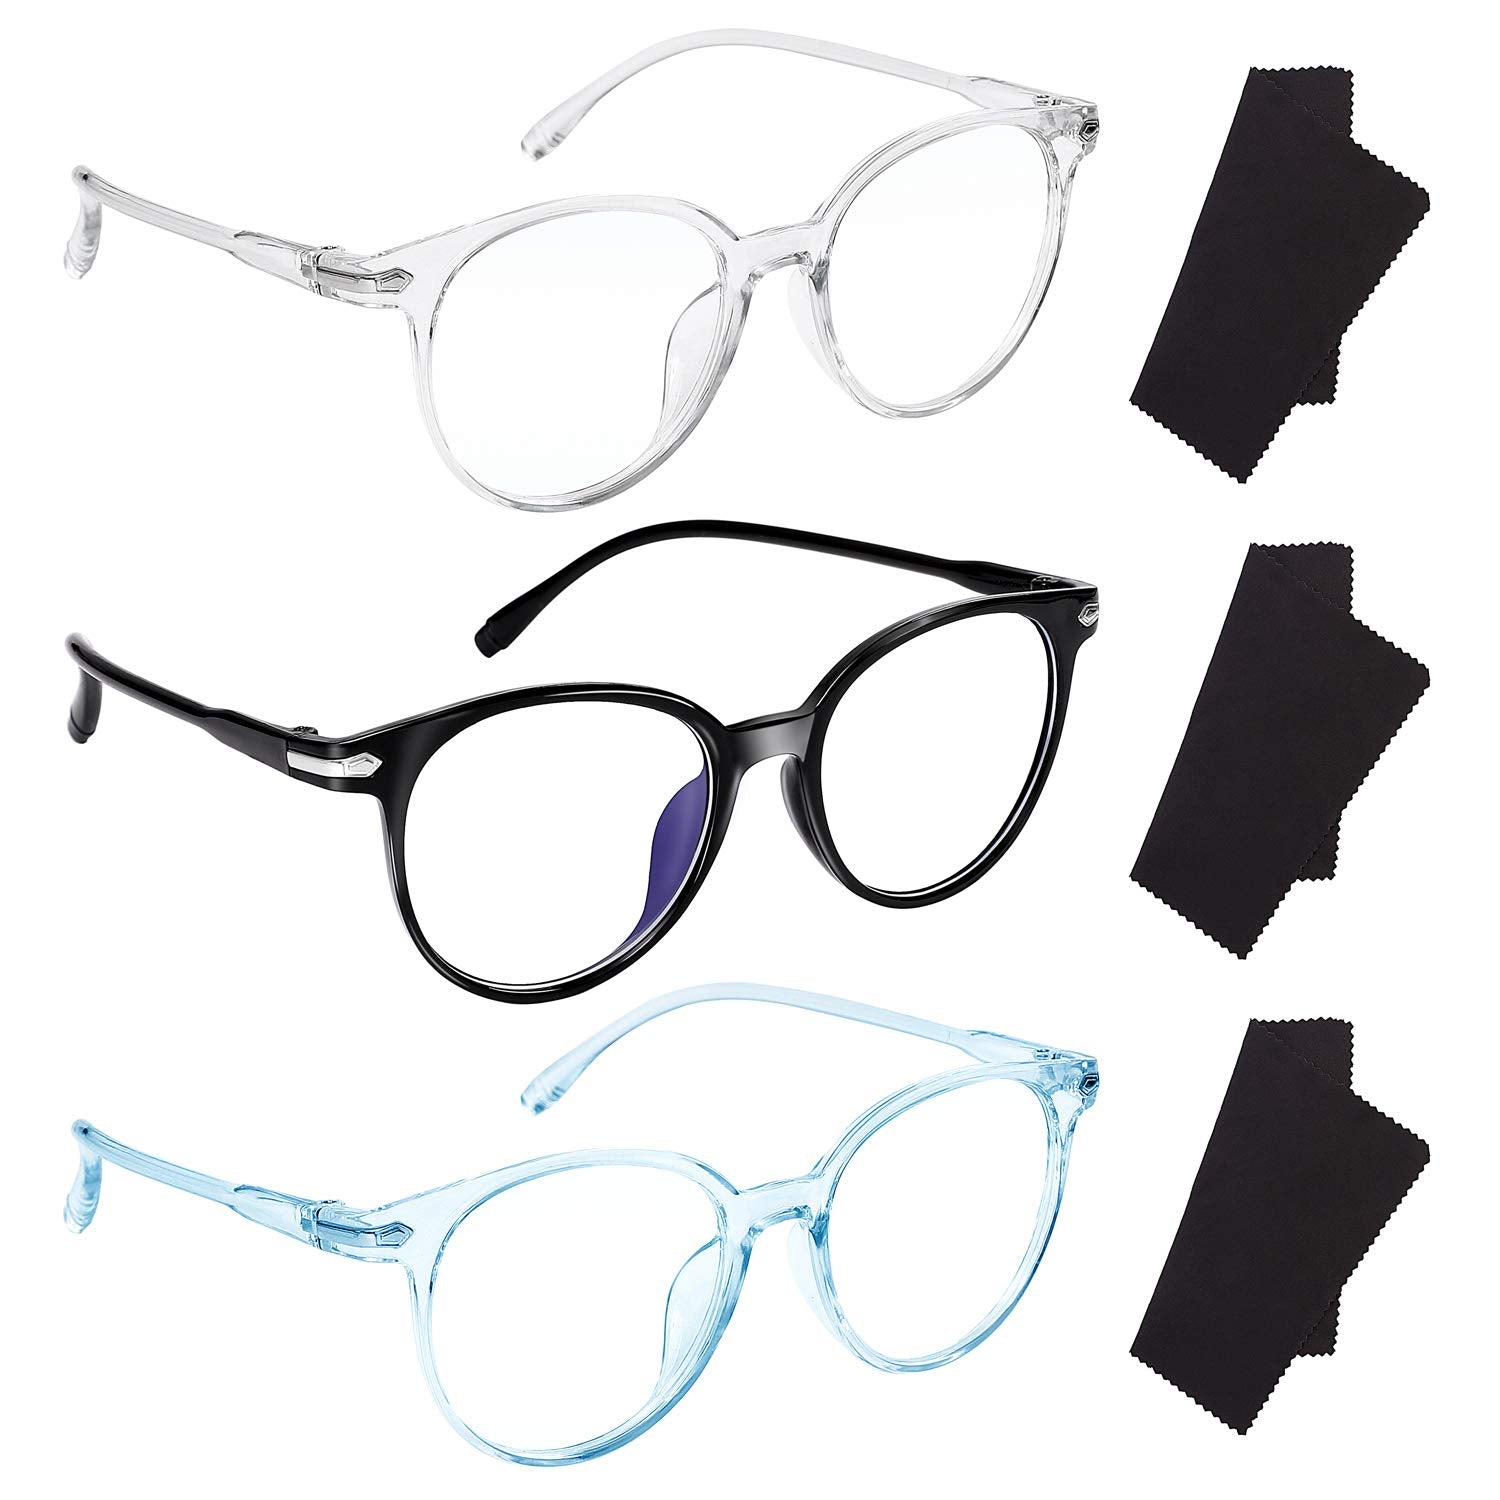 URATOT 3 Pack Blue Light Blocking Glasses Anti-Blue Computer Reading Glasses Retro Clear Lens Anti Eyestrain Eyeglasses for Women or Men